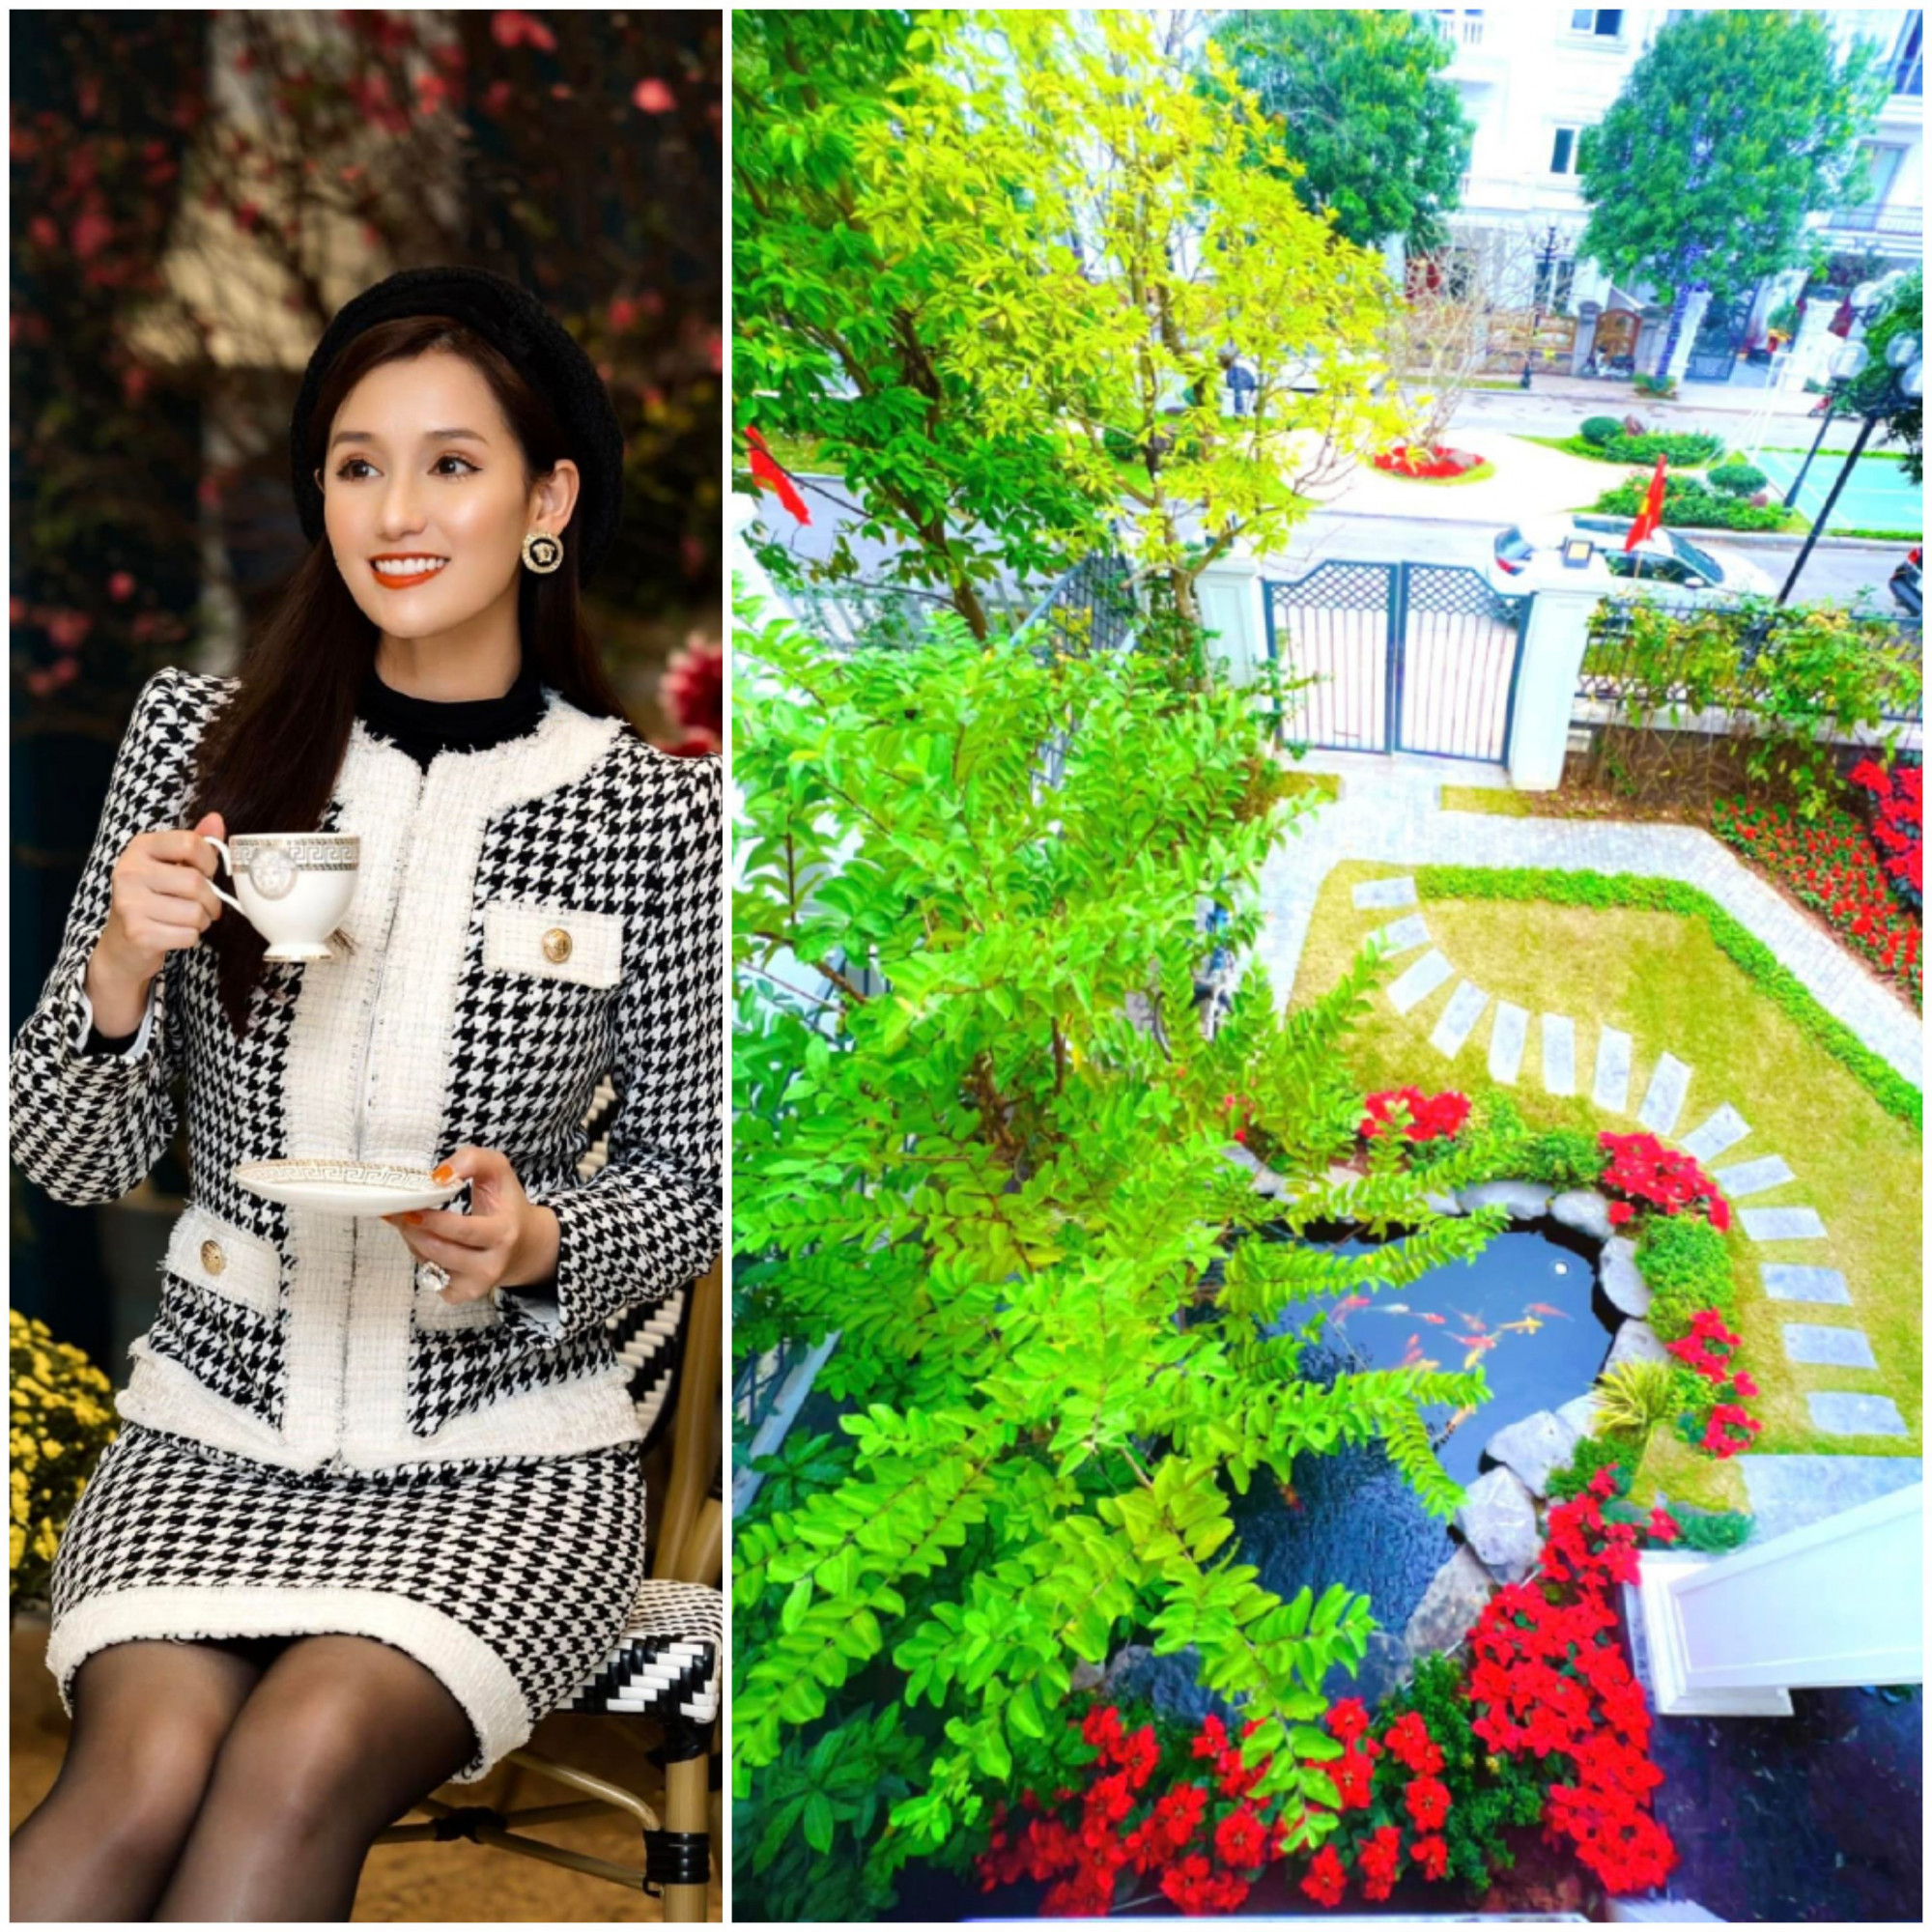 Không gian khu vườn trước và sau nhà của diễn viên Lã Thanh Huyền được cải tạo và trang trí để đón Tết. Từ lối đi cho đến những bông hoa ngập tràn sắc màu được nữ diễn viên lựa chọn kỹ lưỡng.